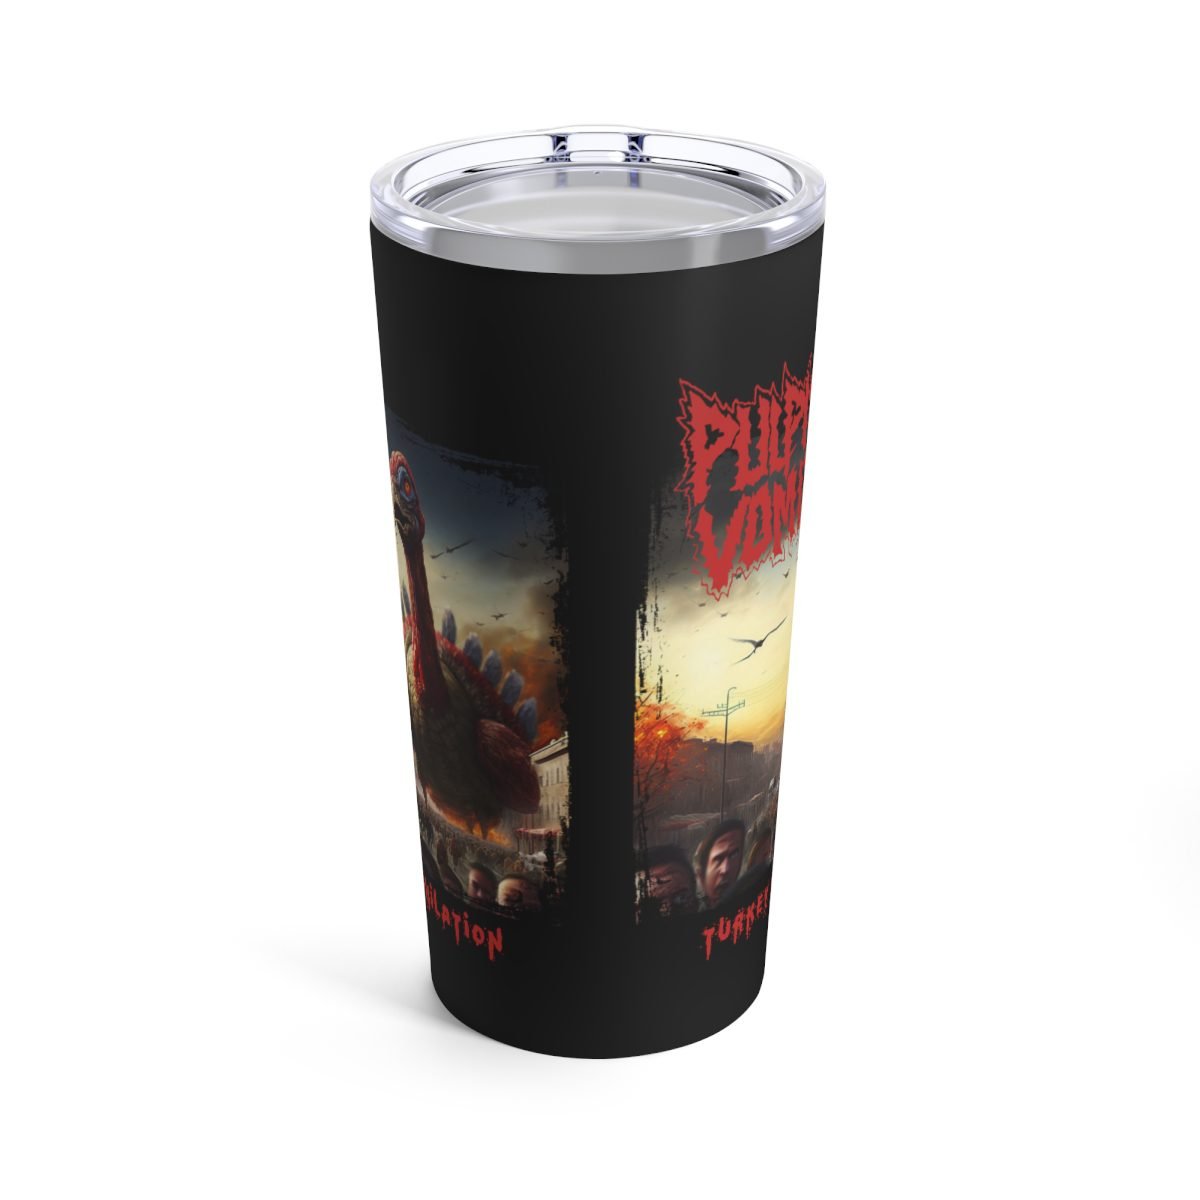 Pulpit Vomit – Turkey Annihilation (The Charon Collective) 20oz Stainless Steel Tumbler